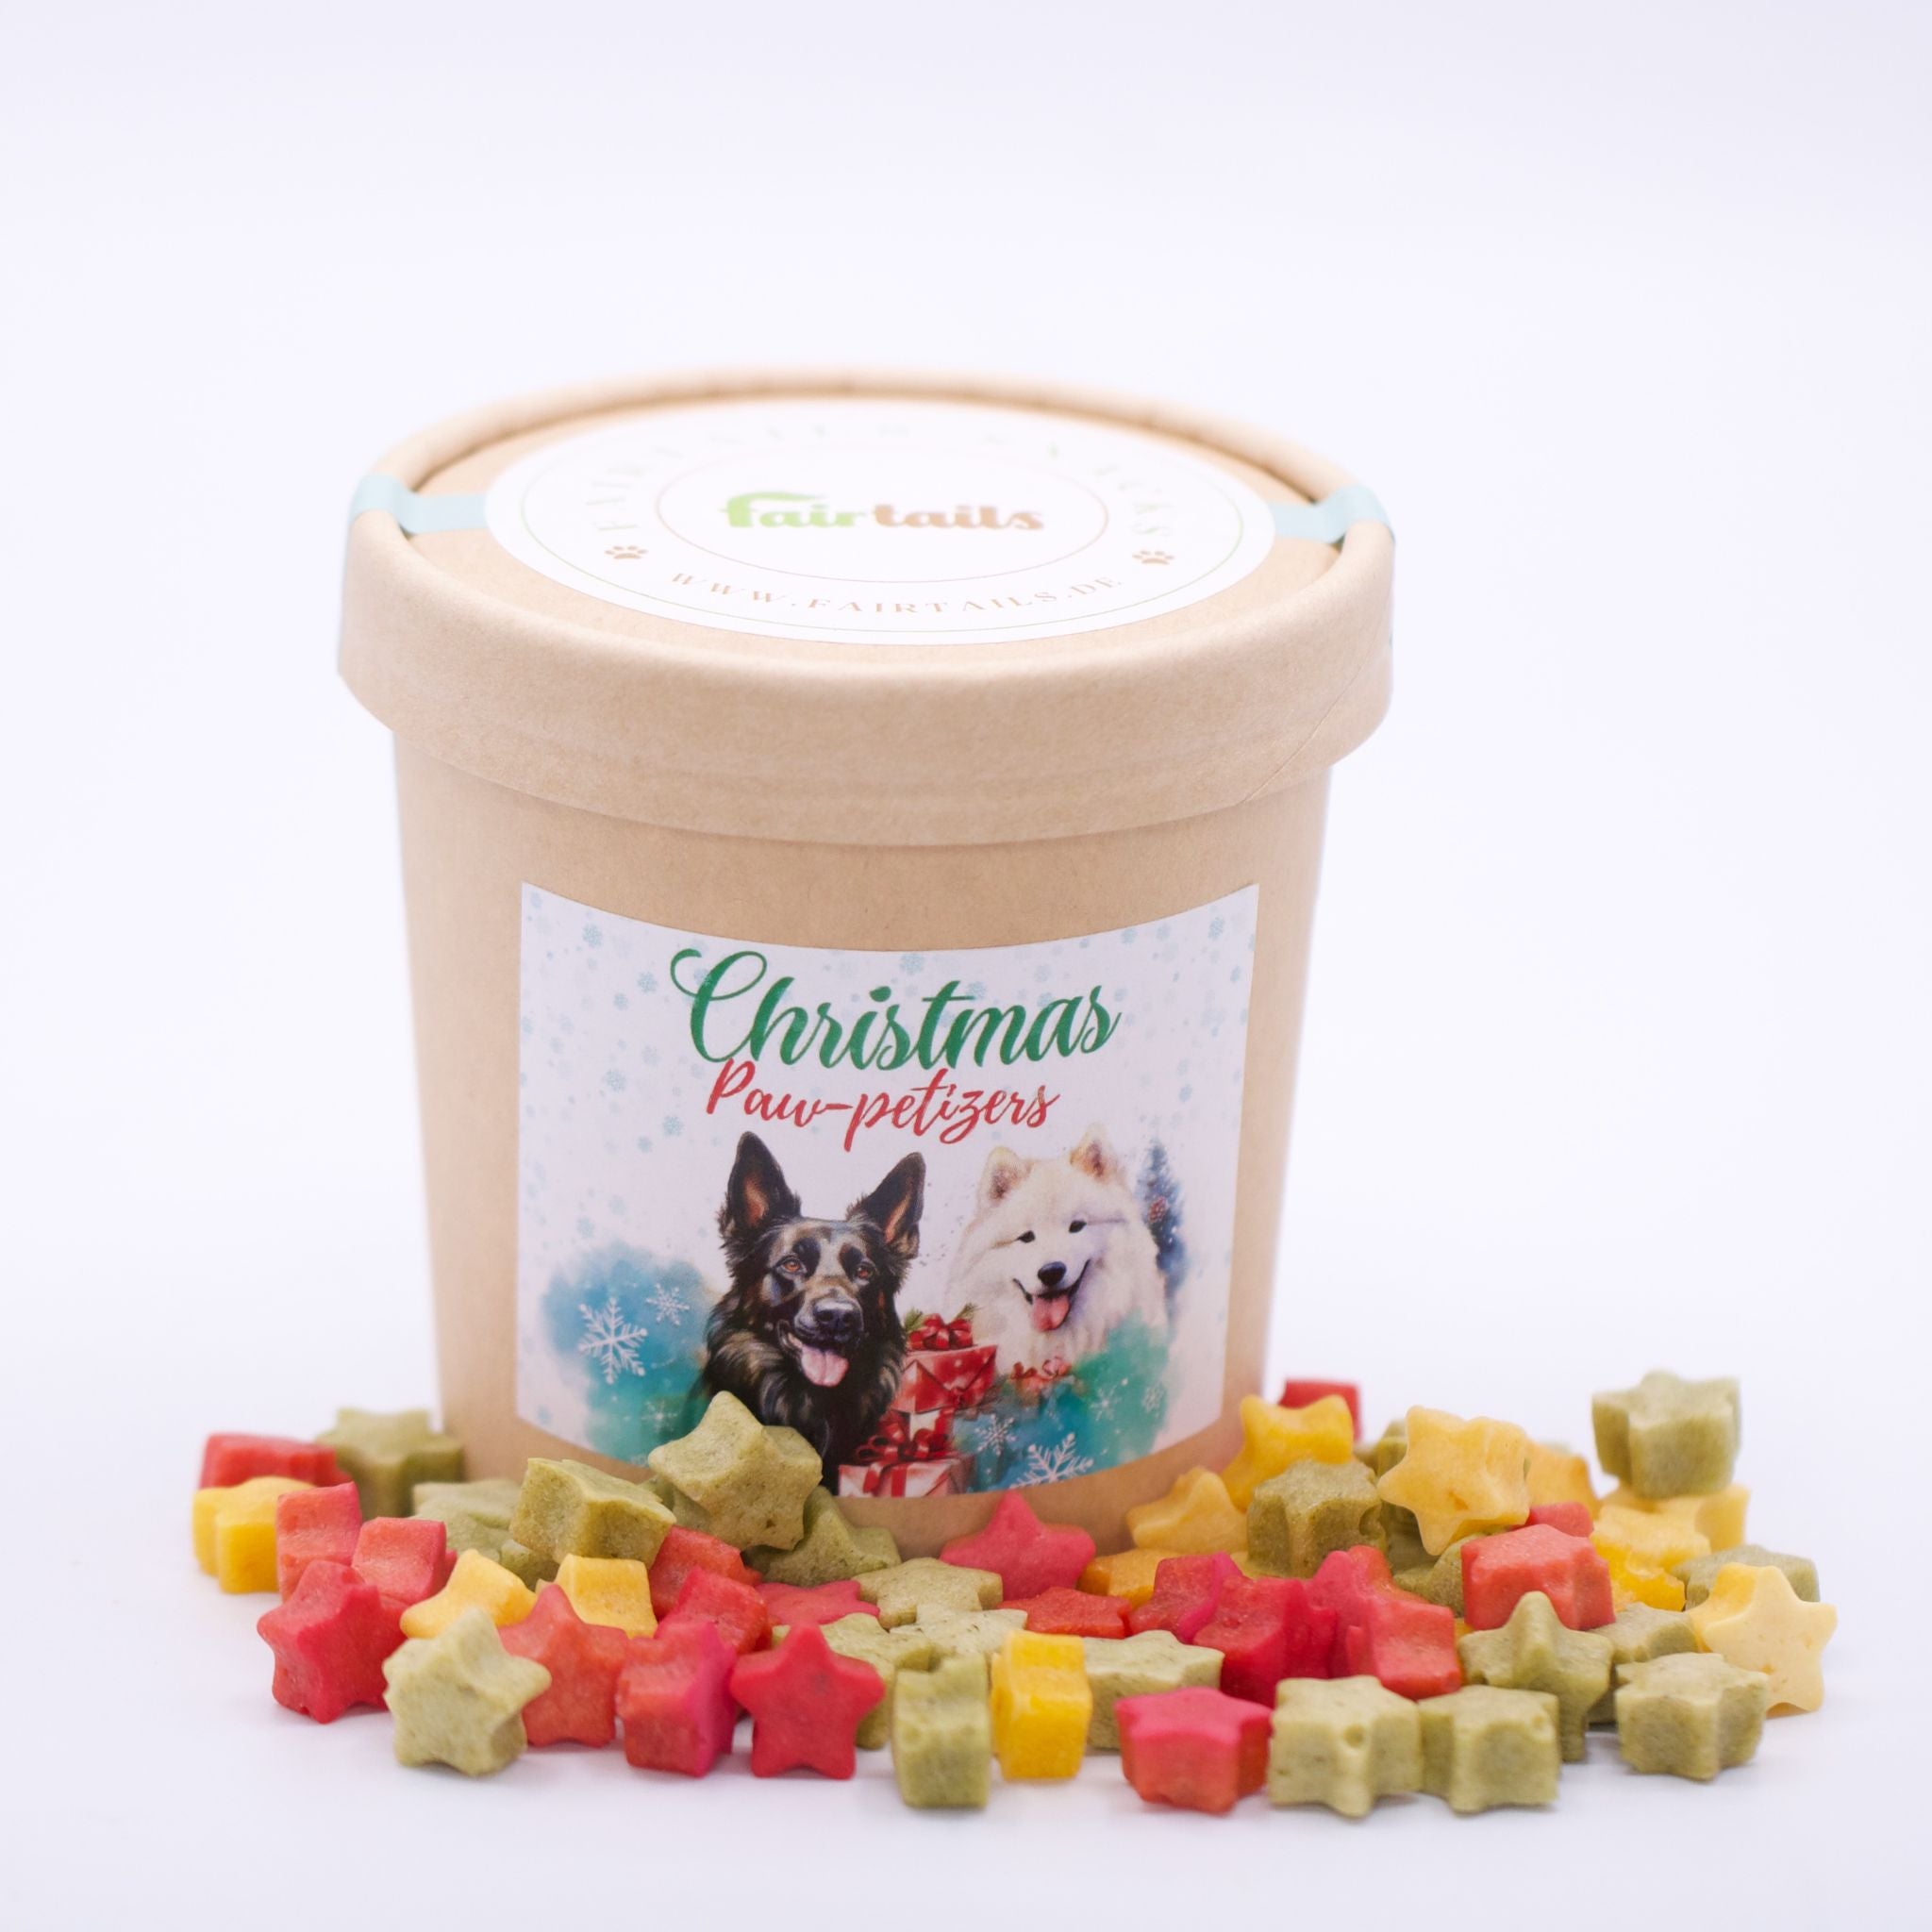 Christmas Paw-petizers - Vegane Weihnachtsleckerli für Hunde